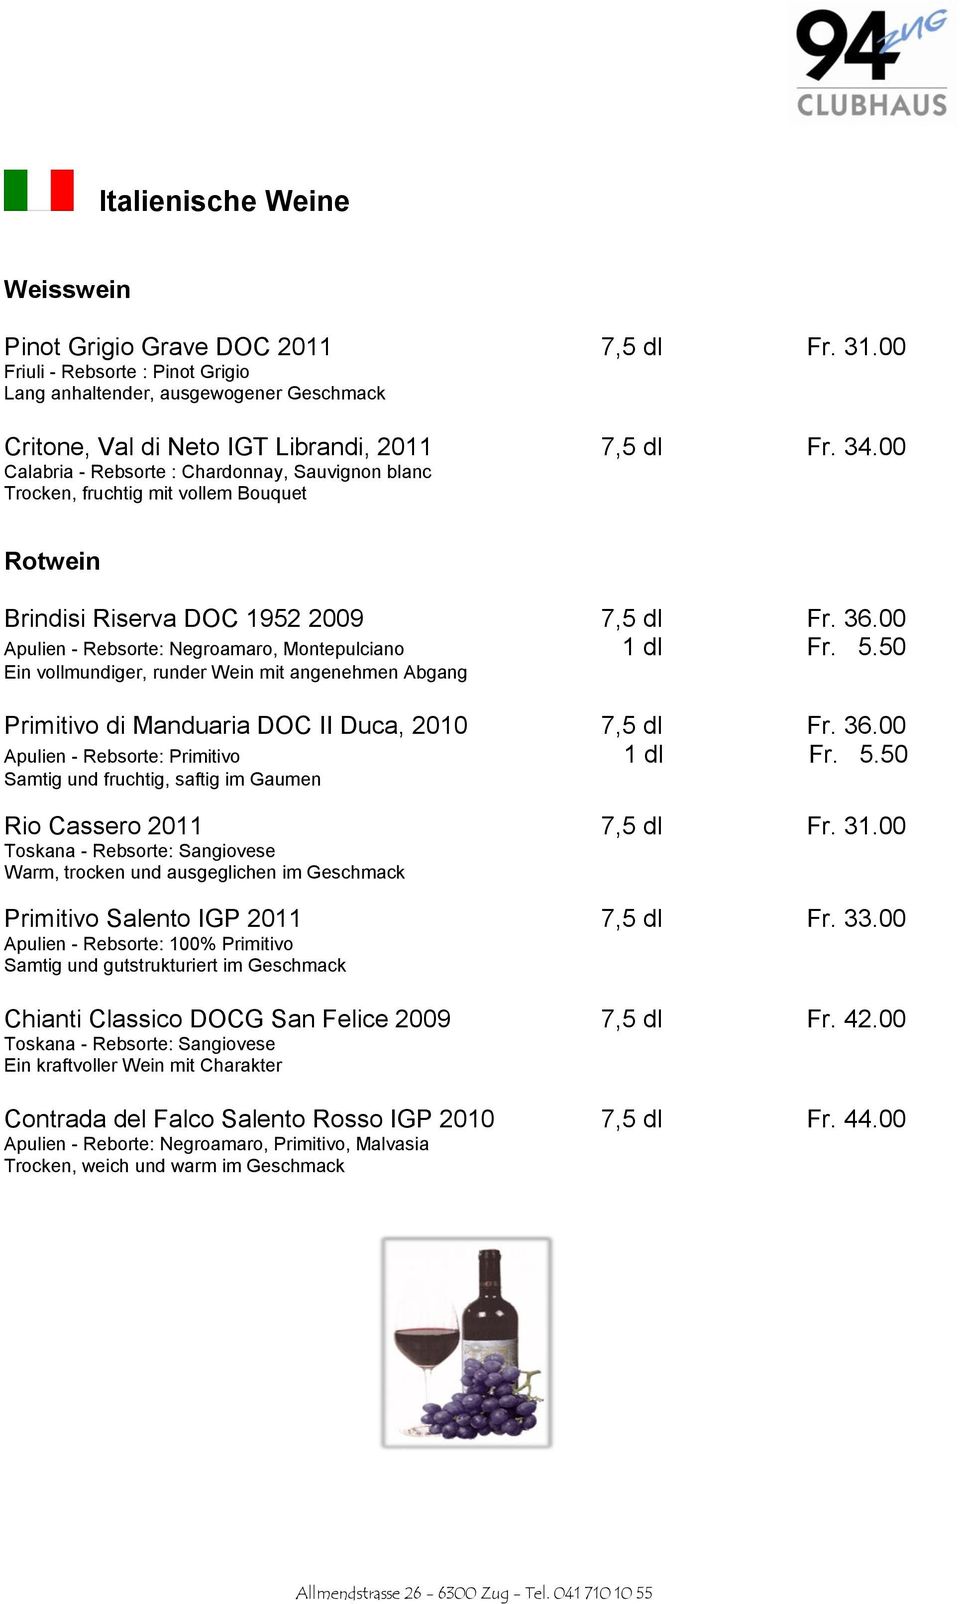 50 Ein vollmundiger, runder Wein mit angenehmen Abgang Primitivo di Manduaria DOC II Duca, 2010 7,5 dl Fr. 36.00 Apulien - Rebsorte: Primitivo 1 dl Fr. 5.